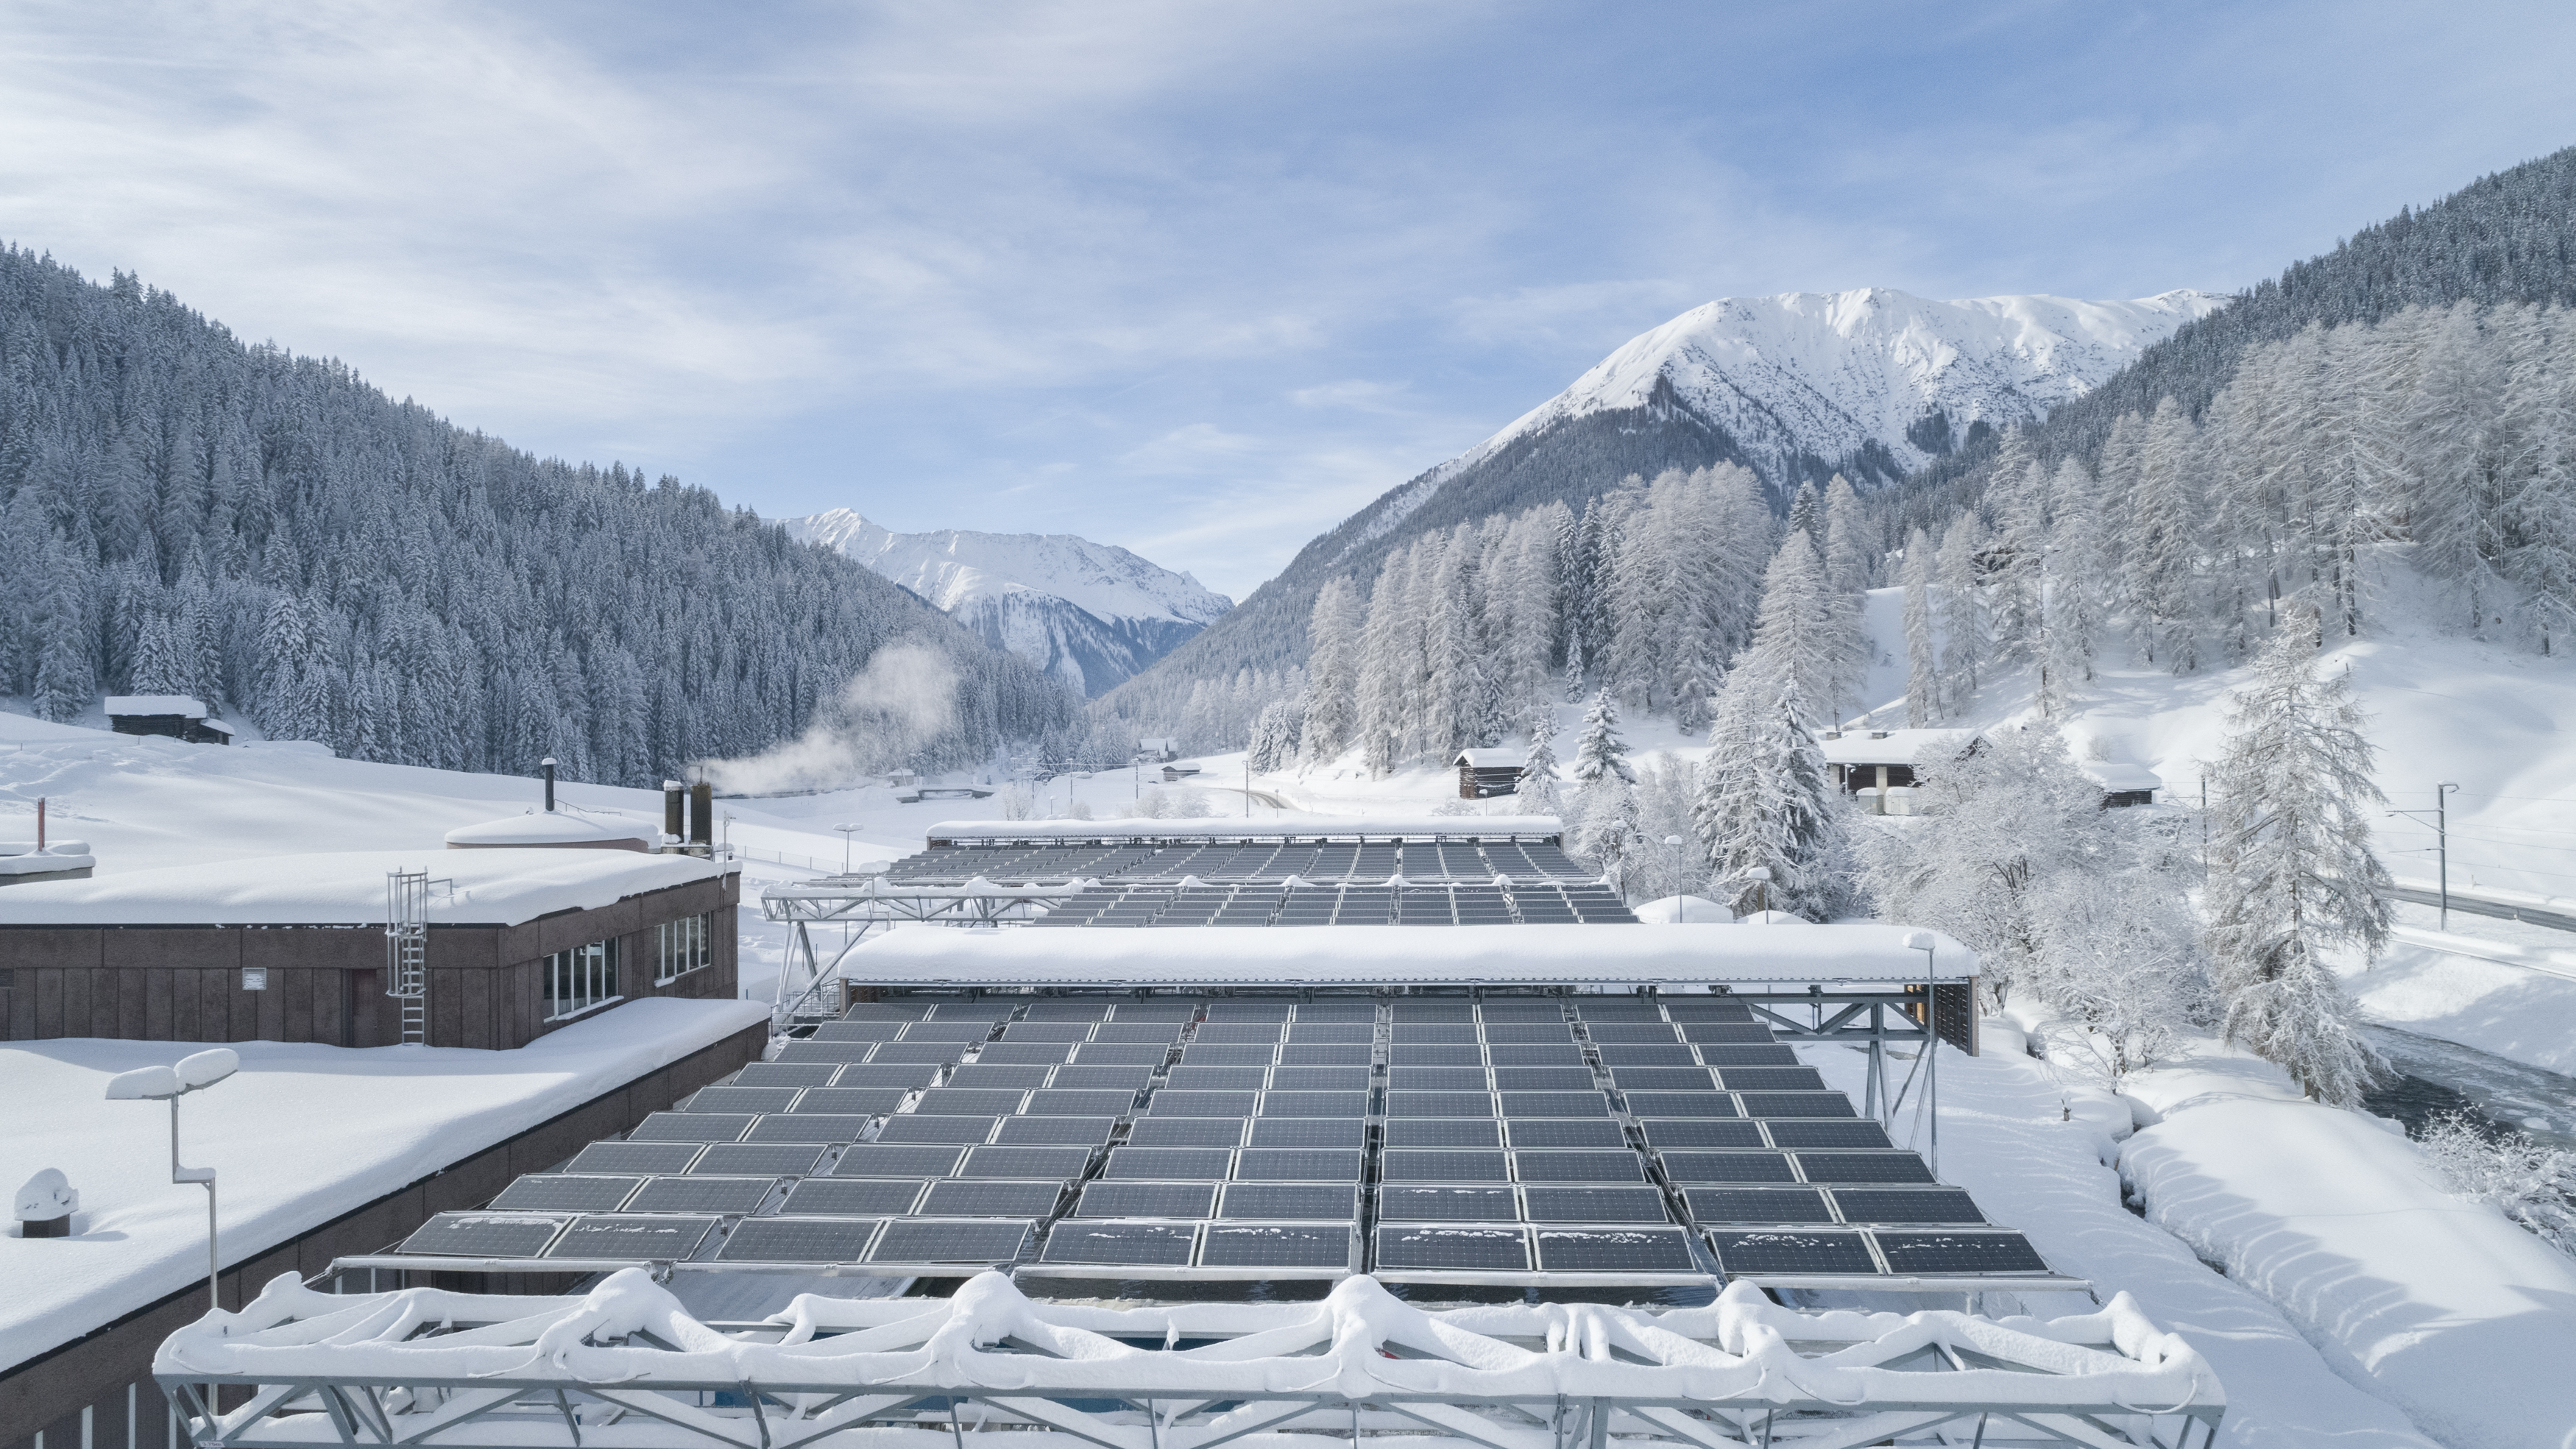 Solarfaltdach im Schnee | Kläranlage Davos (GR) | © dhp technology